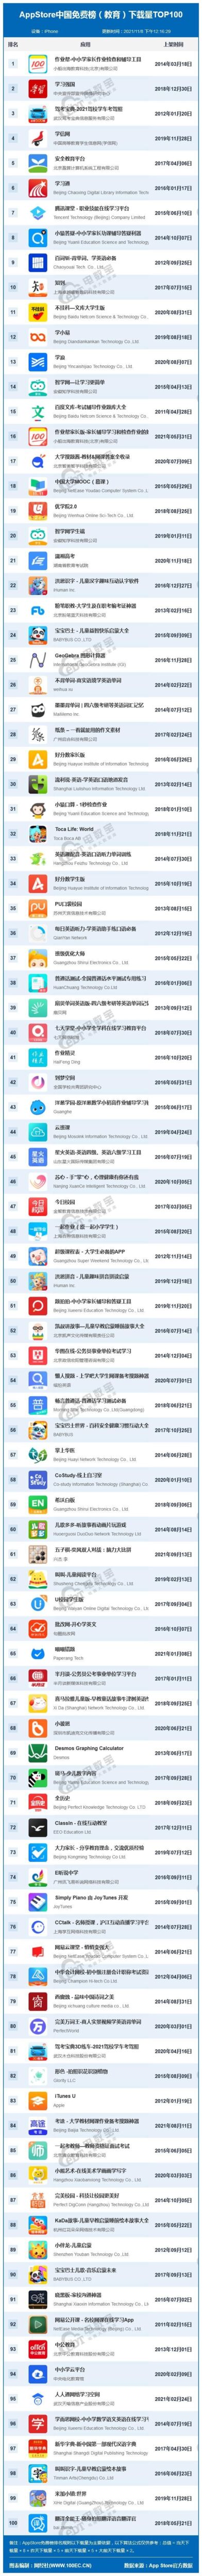 11月AppStore中国免费榜(教育)TOP100：作业帮 腾讯课堂等居前十